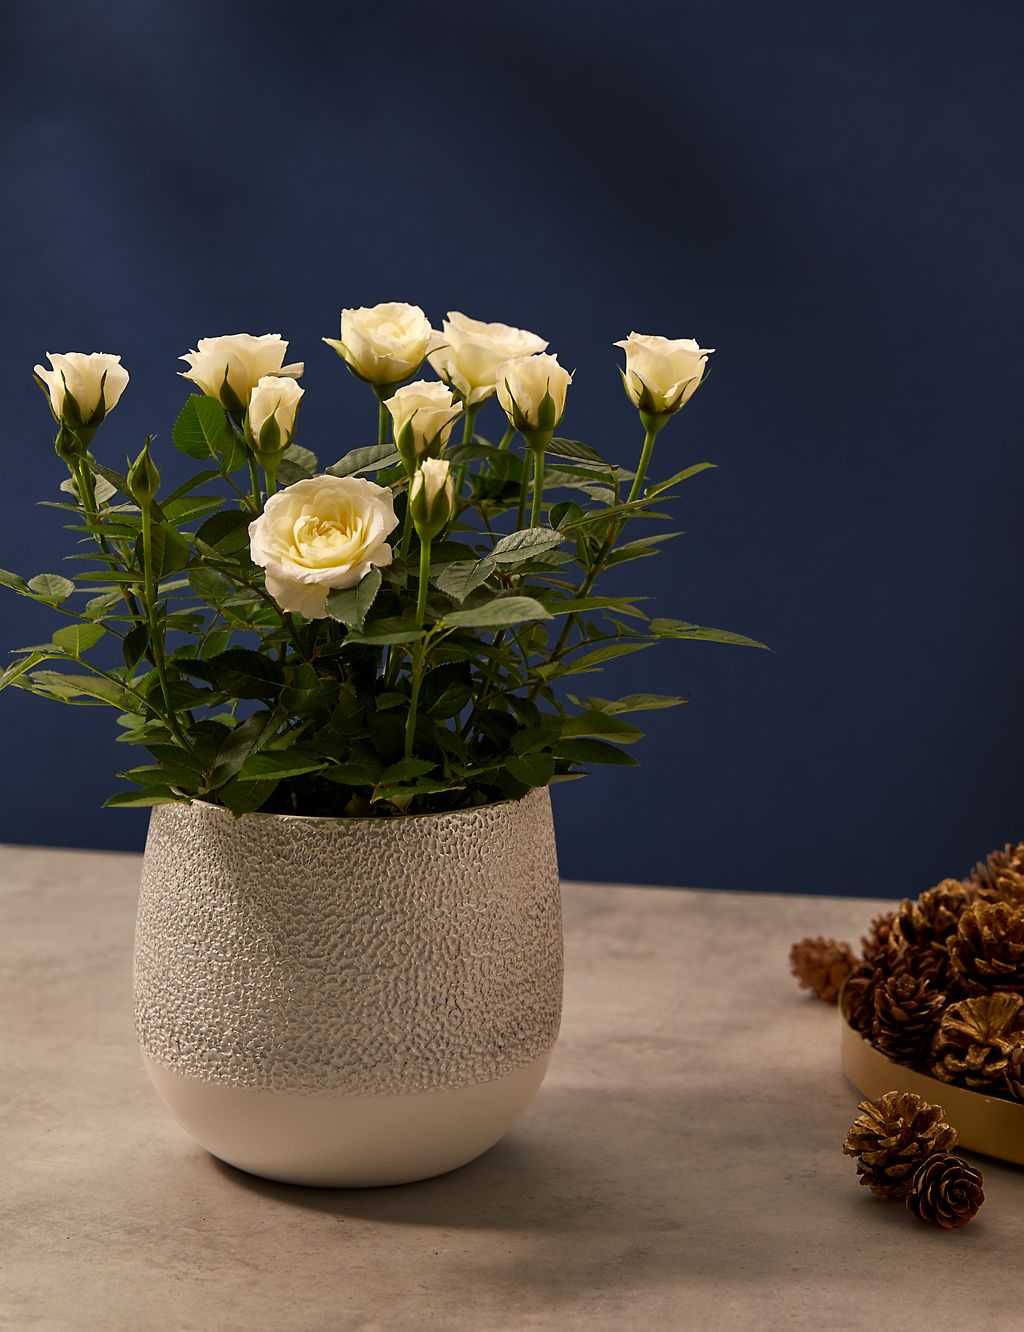 White Rose in Ceramic Pot 3 of 4